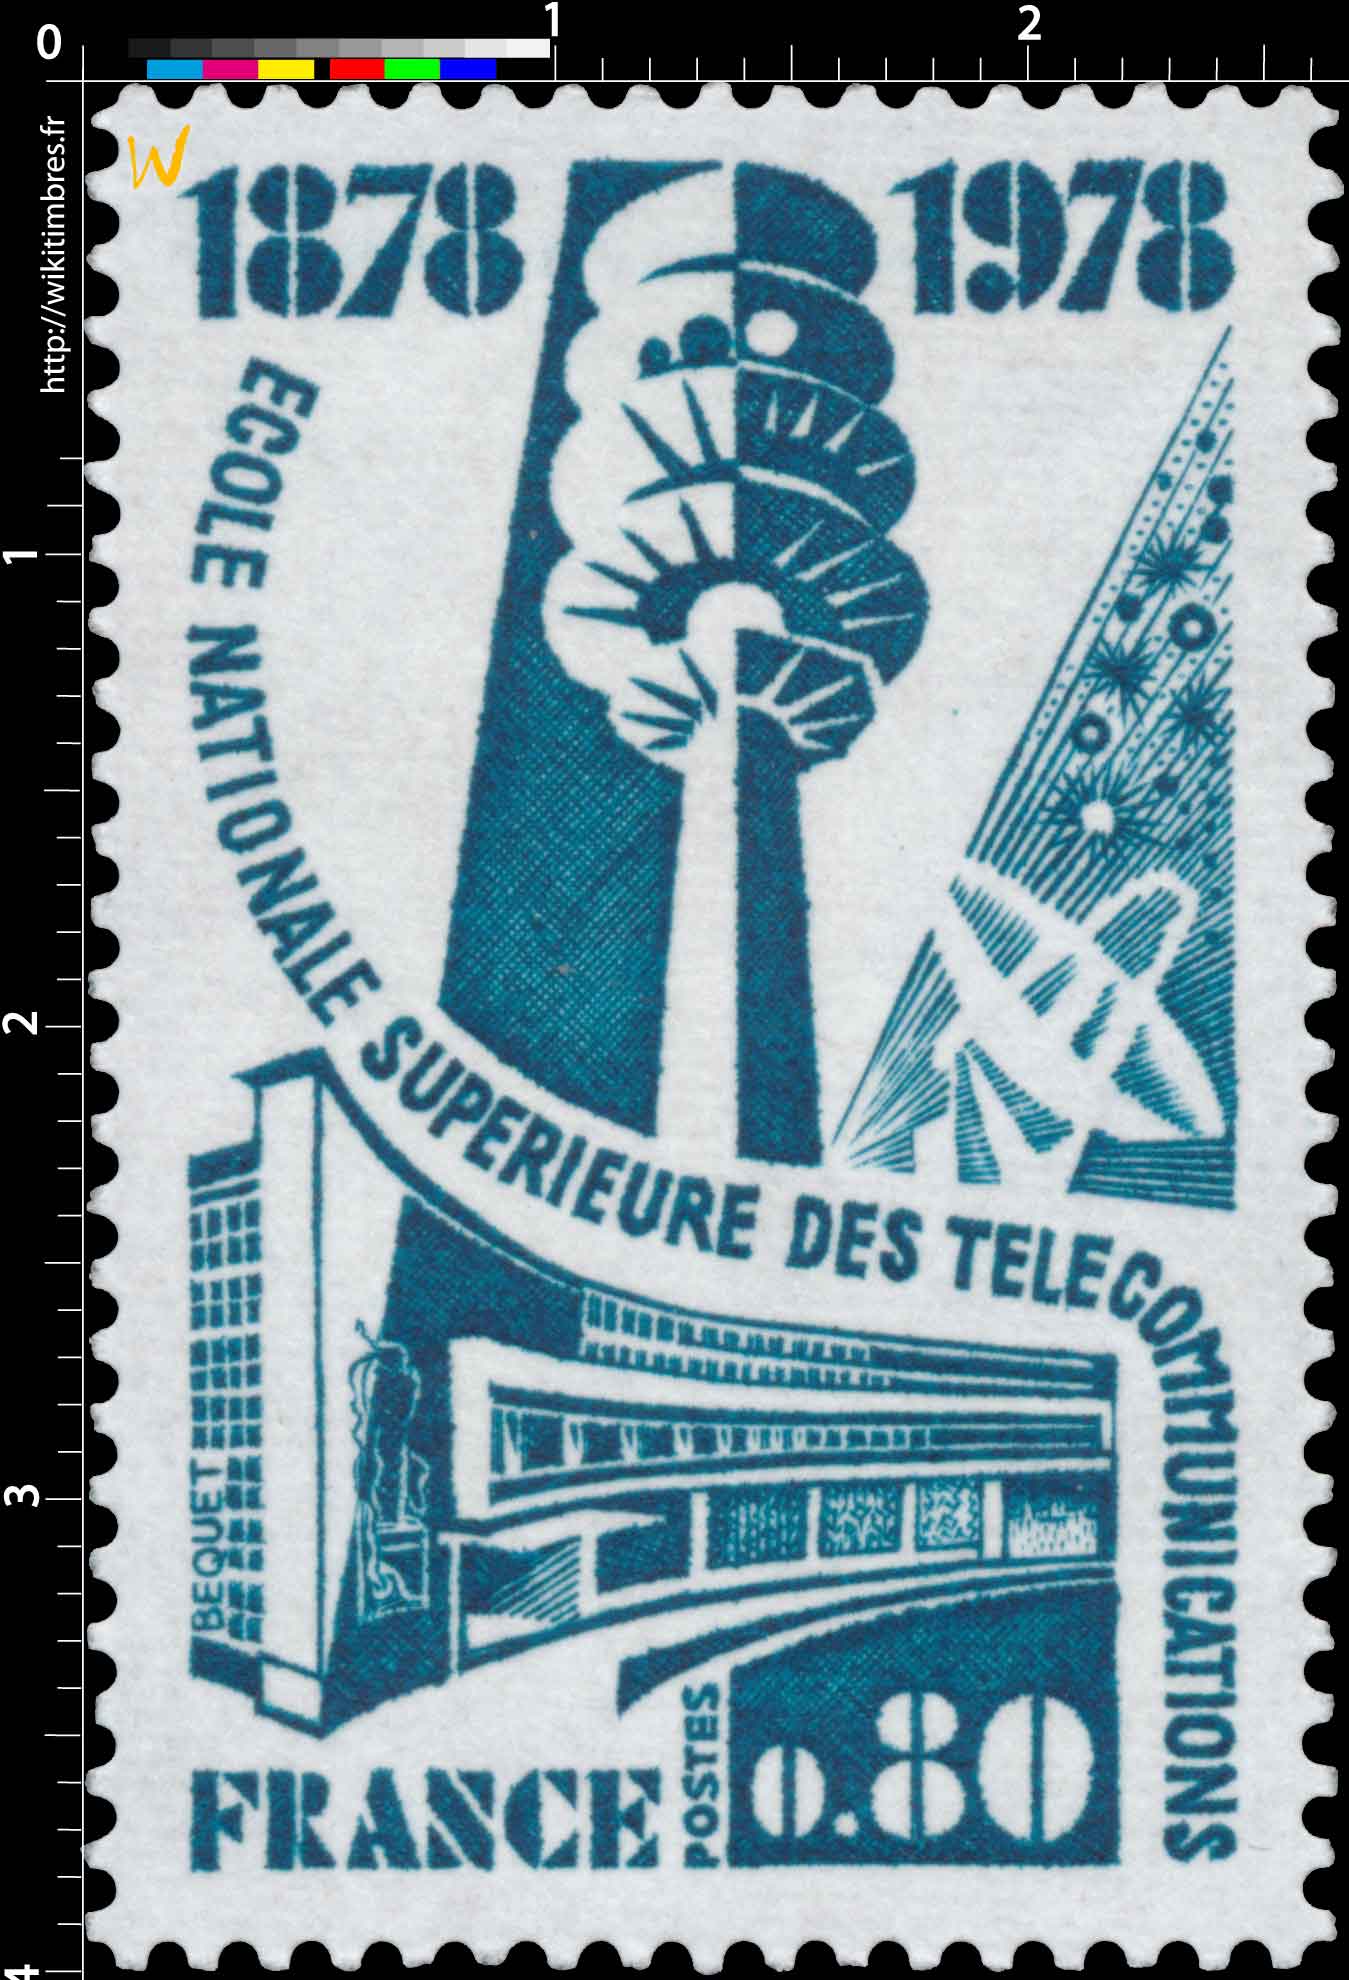 ÉCOLE NATIONALE SUPÉRIEURE DES TÉLÉCOMMUNICATIONS 1878-1978